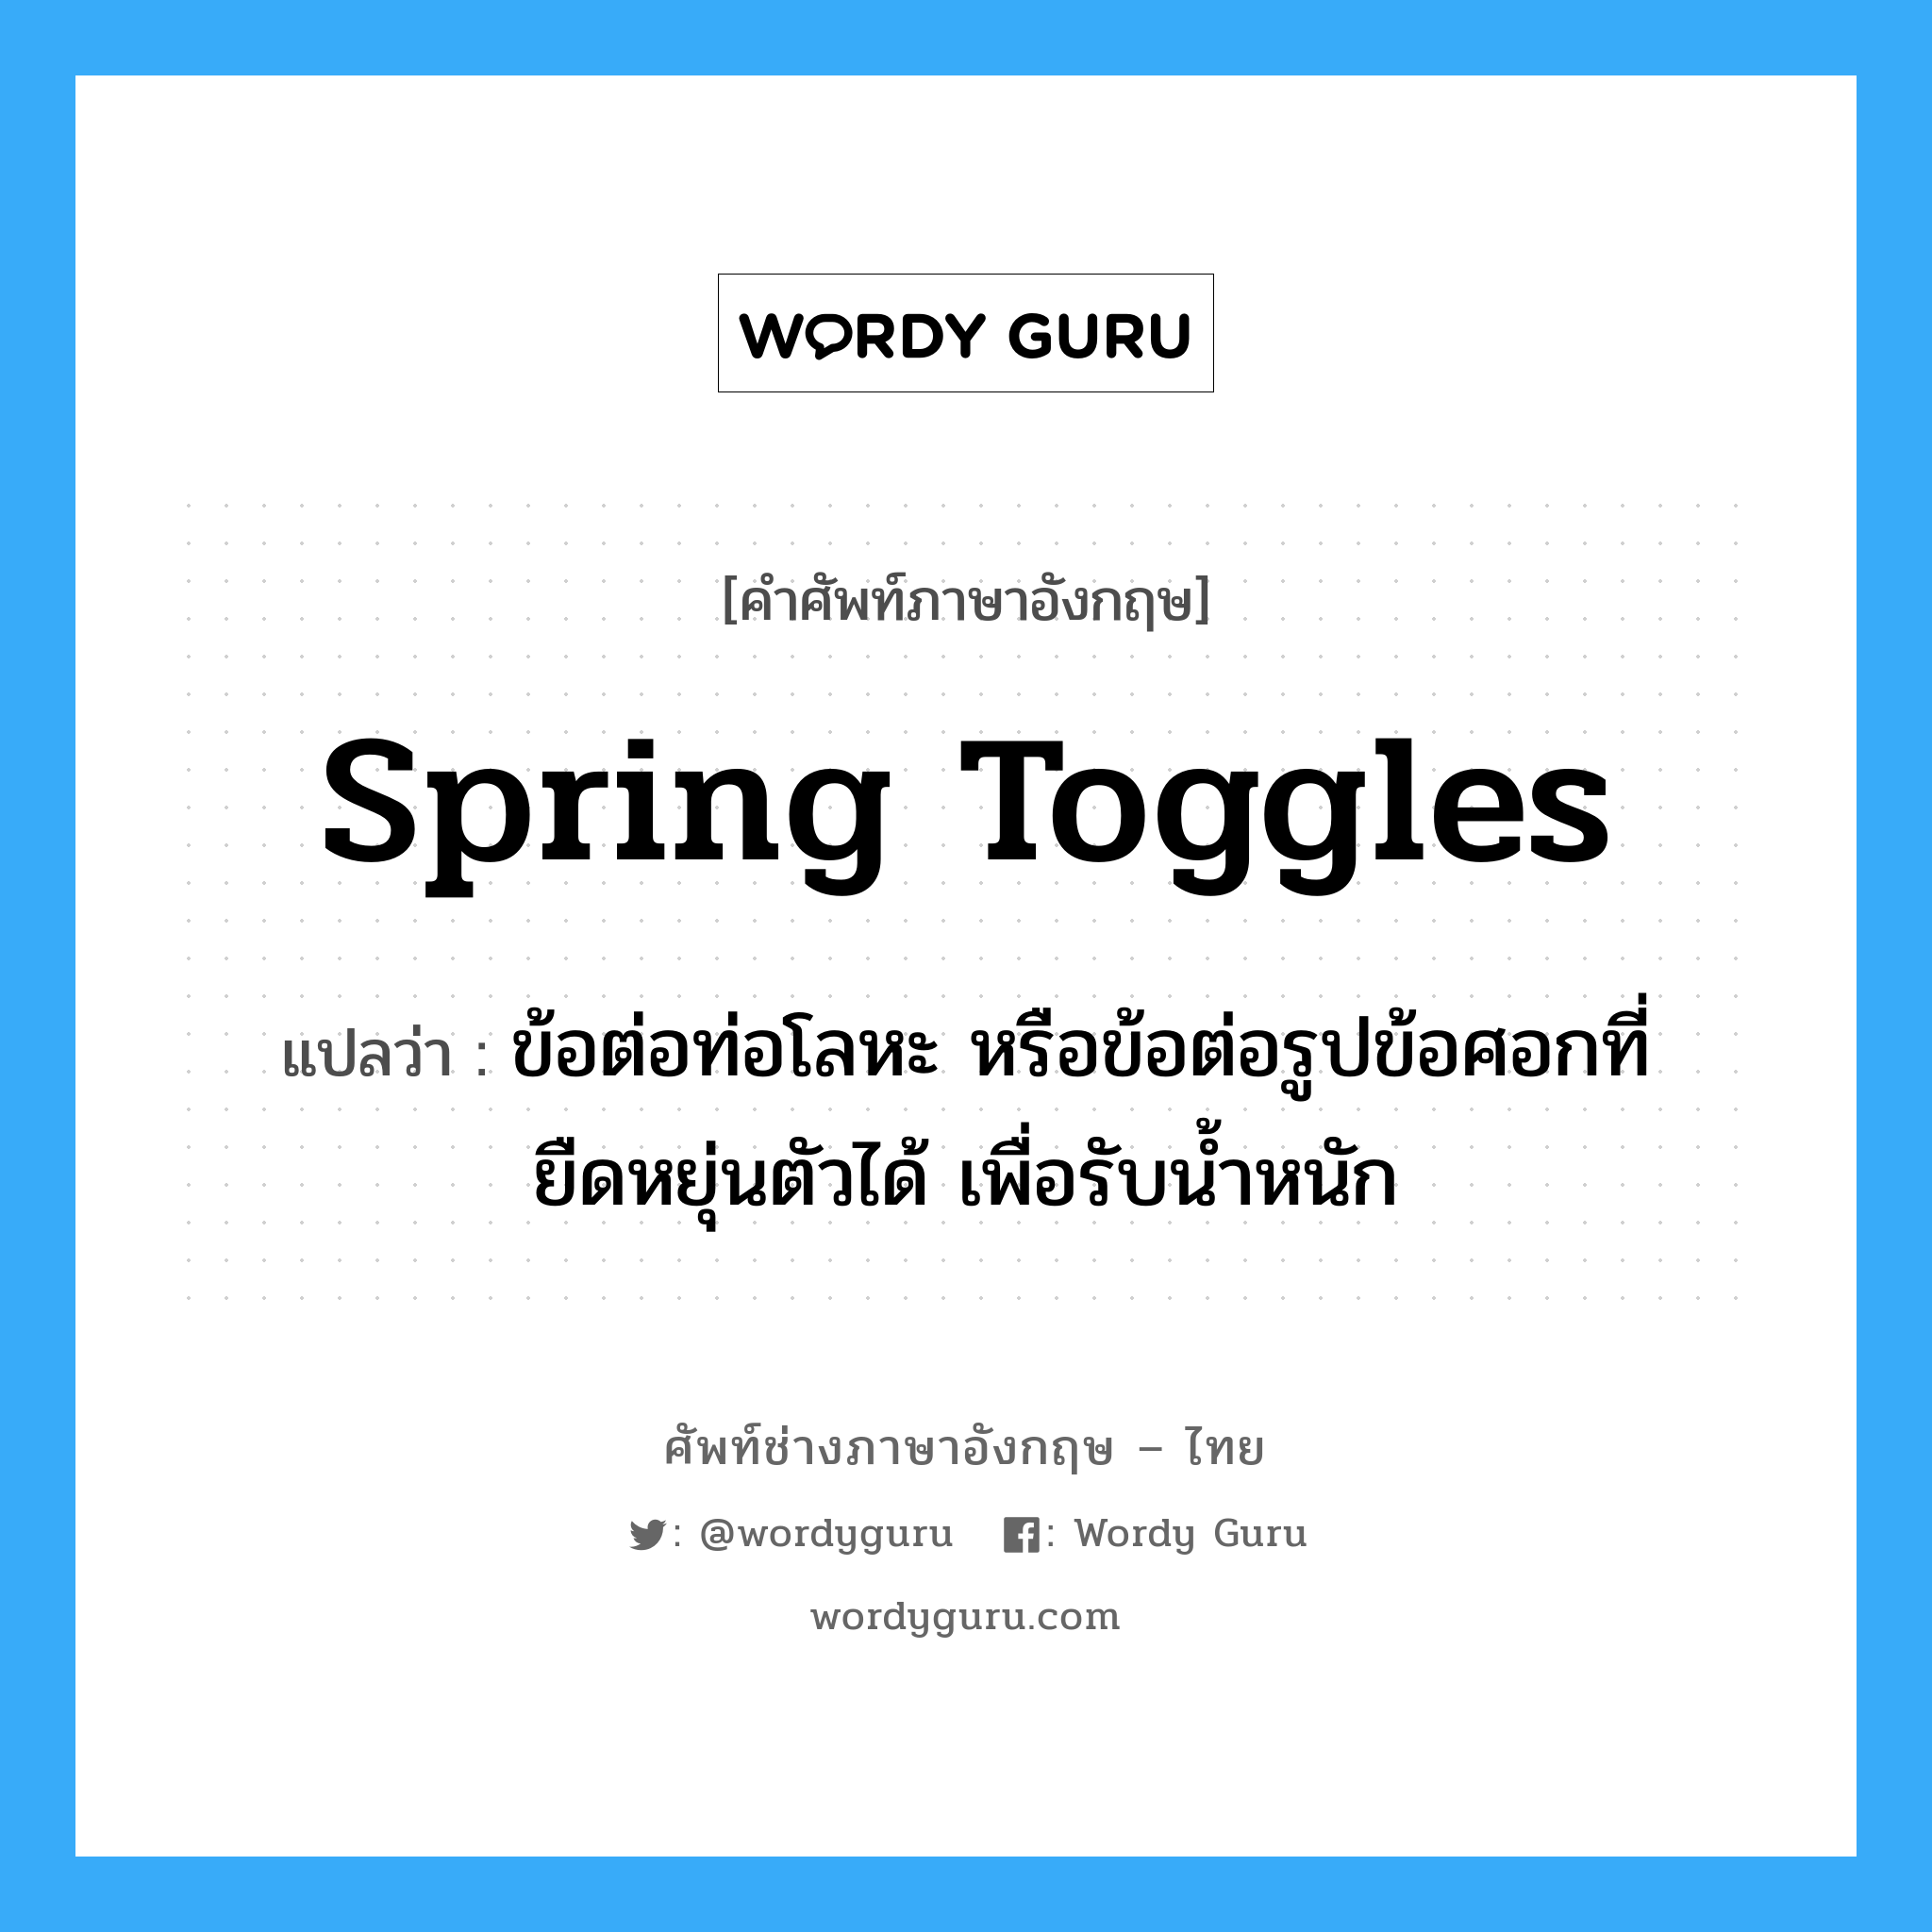 spring toggles แปลว่า?, คำศัพท์ช่างภาษาอังกฤษ - ไทย spring toggles คำศัพท์ภาษาอังกฤษ spring toggles แปลว่า ข้อต่อท่อโลหะ หรือข้อต่อรูปข้อศอกที่ยืดหยุ่นตัวได้ เพื่อรับน้ำหนัก